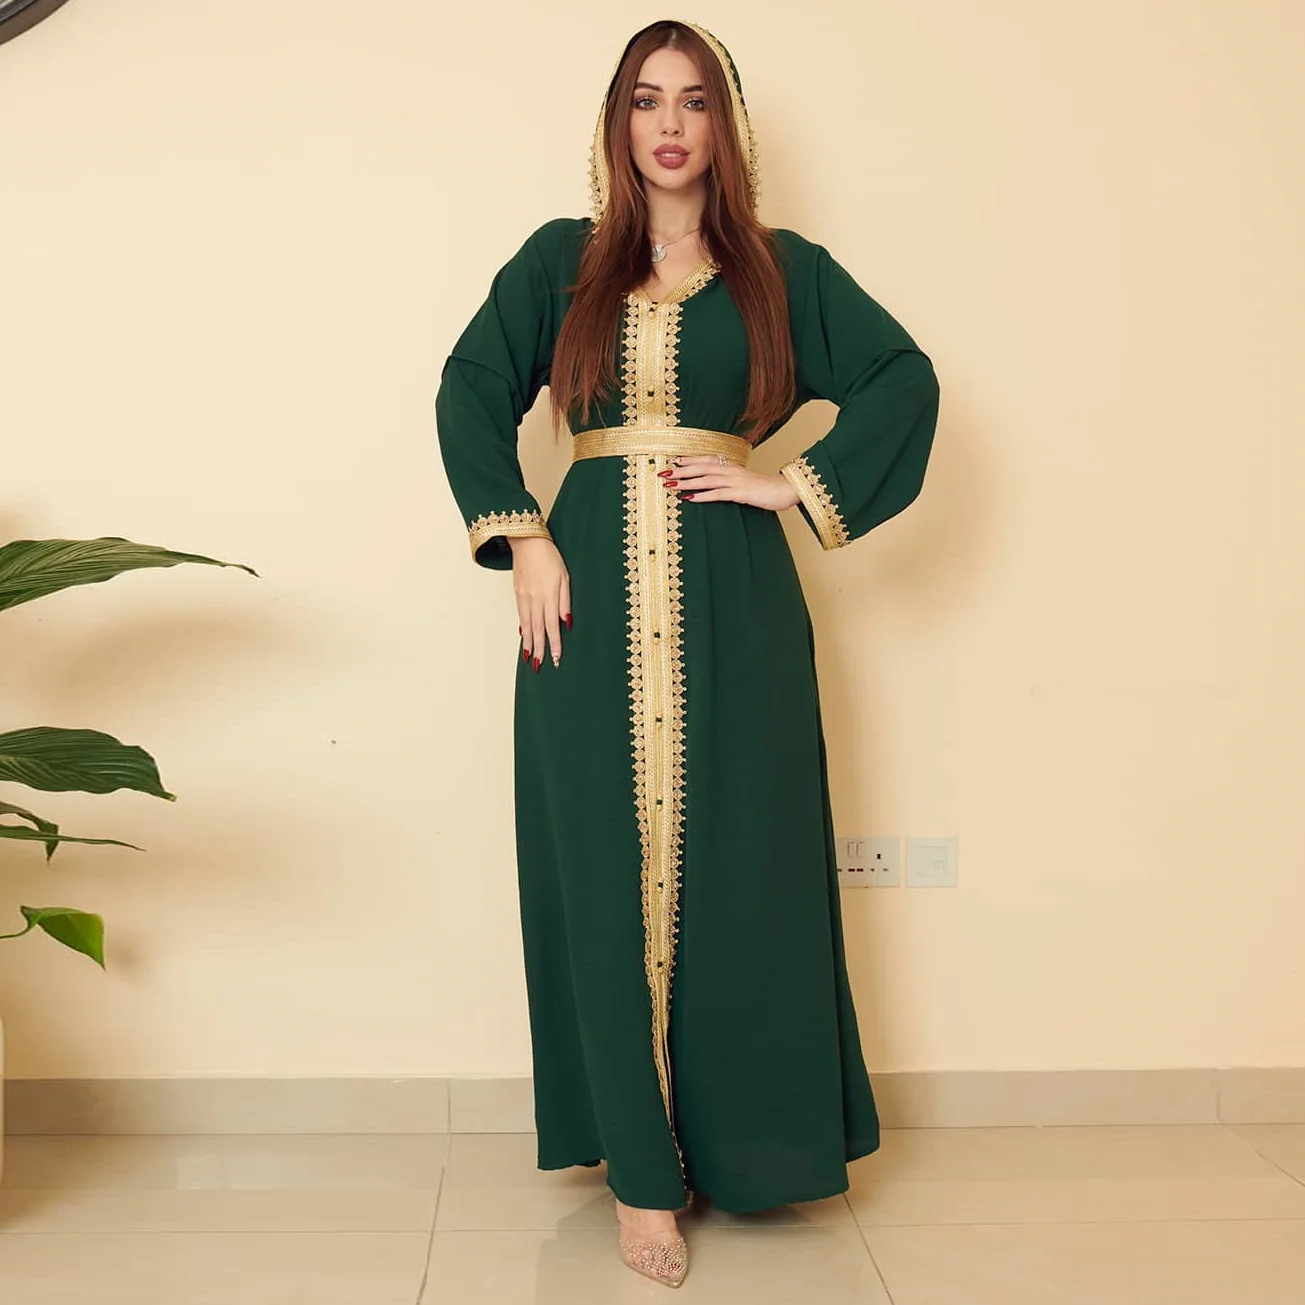 Wepbel Eid Abaya мусульманское платье Iddle Восточное льняное зеленое Женская одежда с капюшоном Abaya платье большое свободное платье